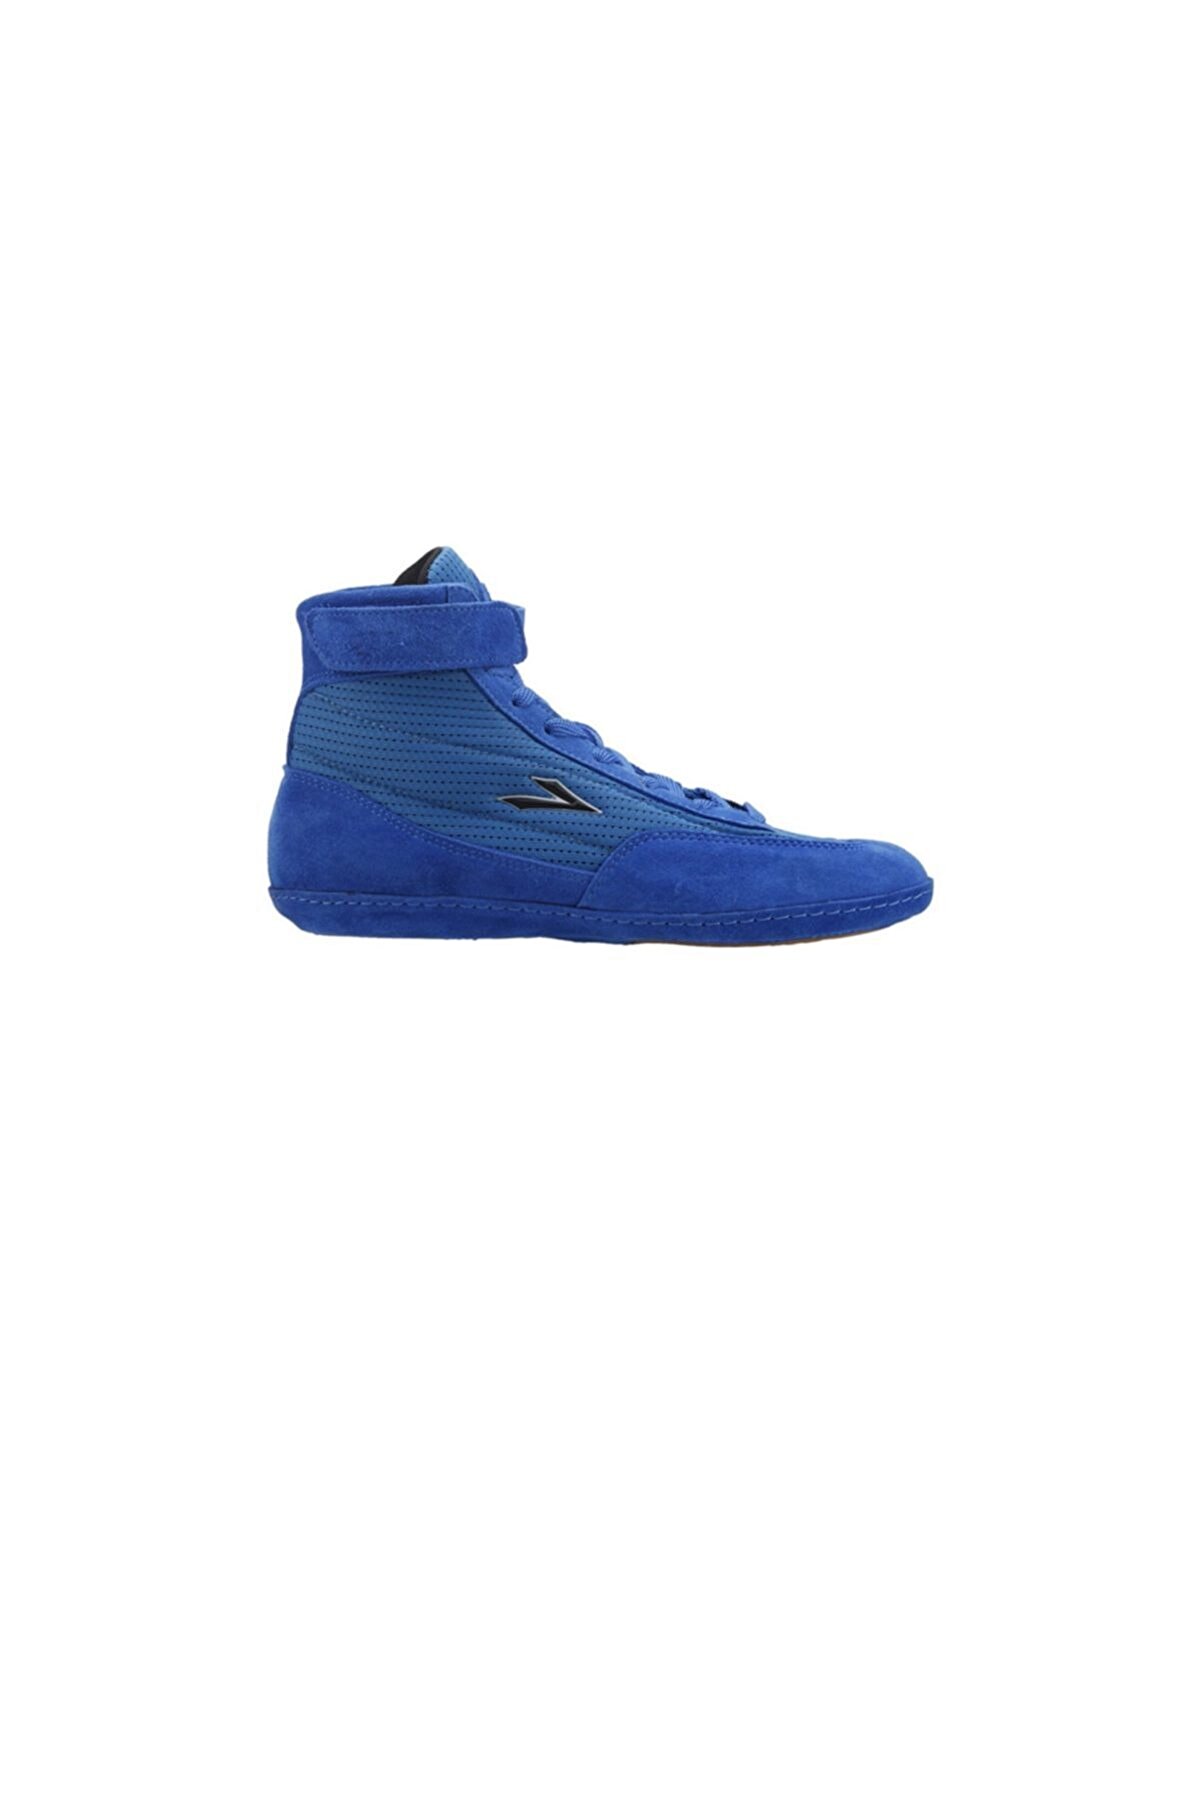 Lig Lig Mavi Güreş Ayakkabısı (4013-05)